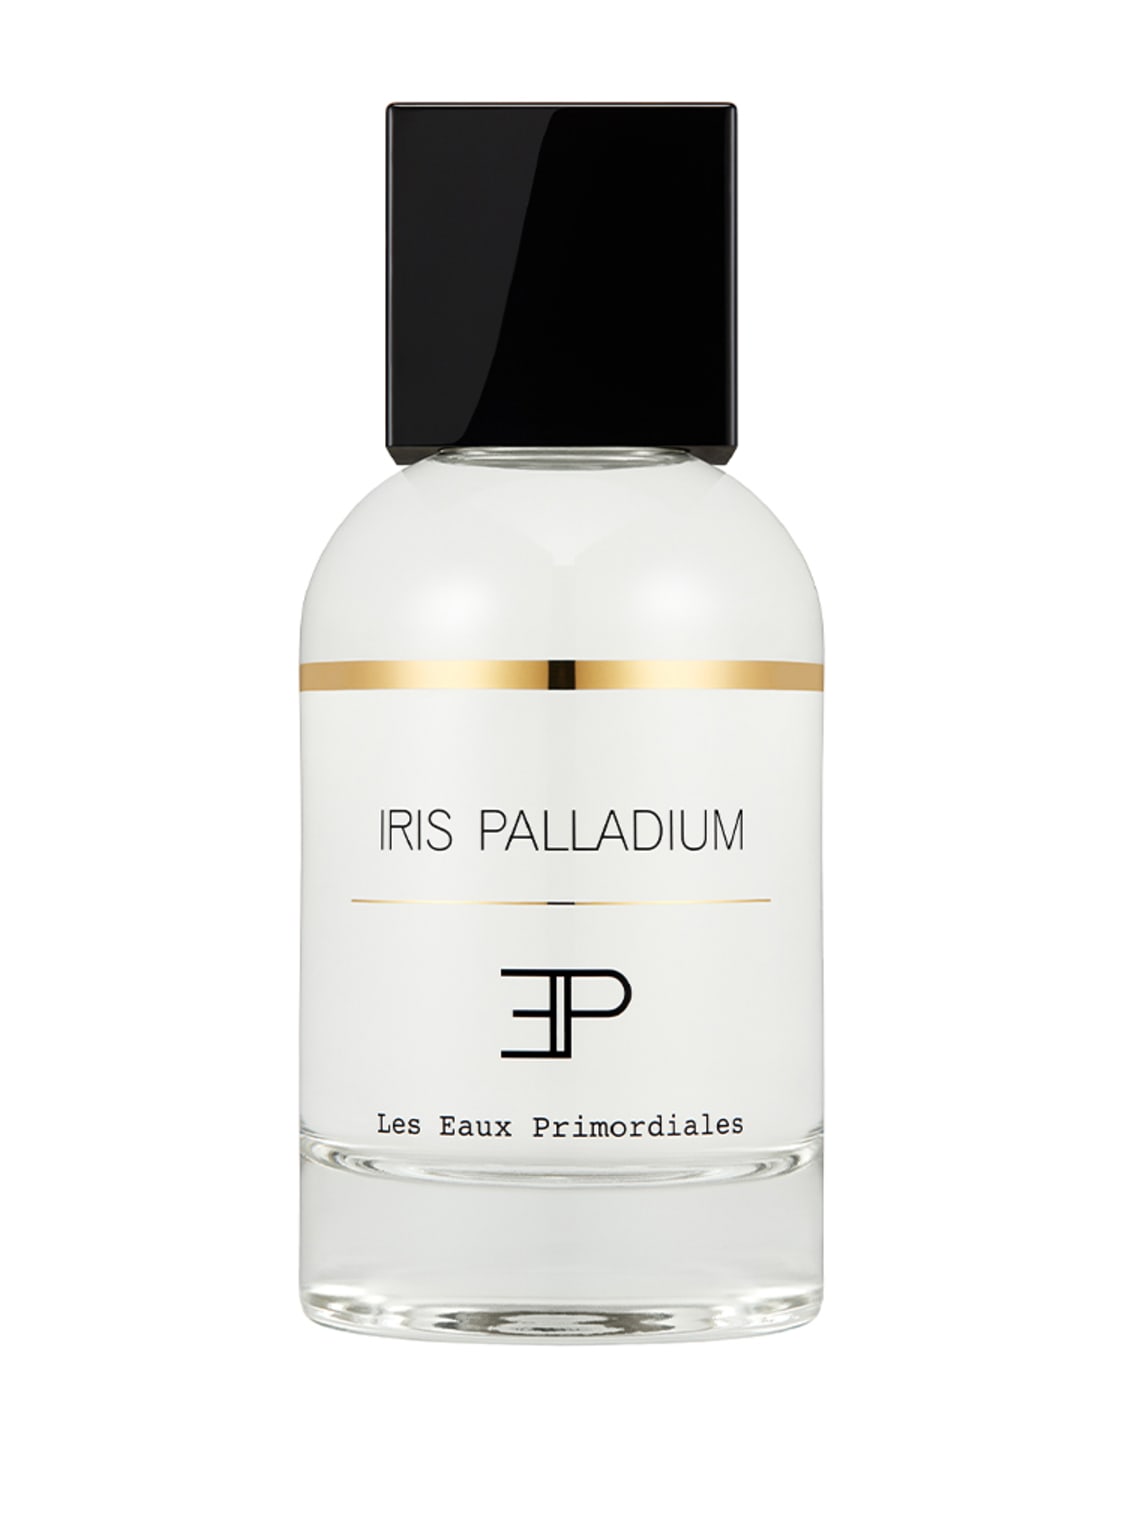 Les Eaux Primordiales Iris Palladium Eau de Parfum 100 ml von Les Eaux Primordiales